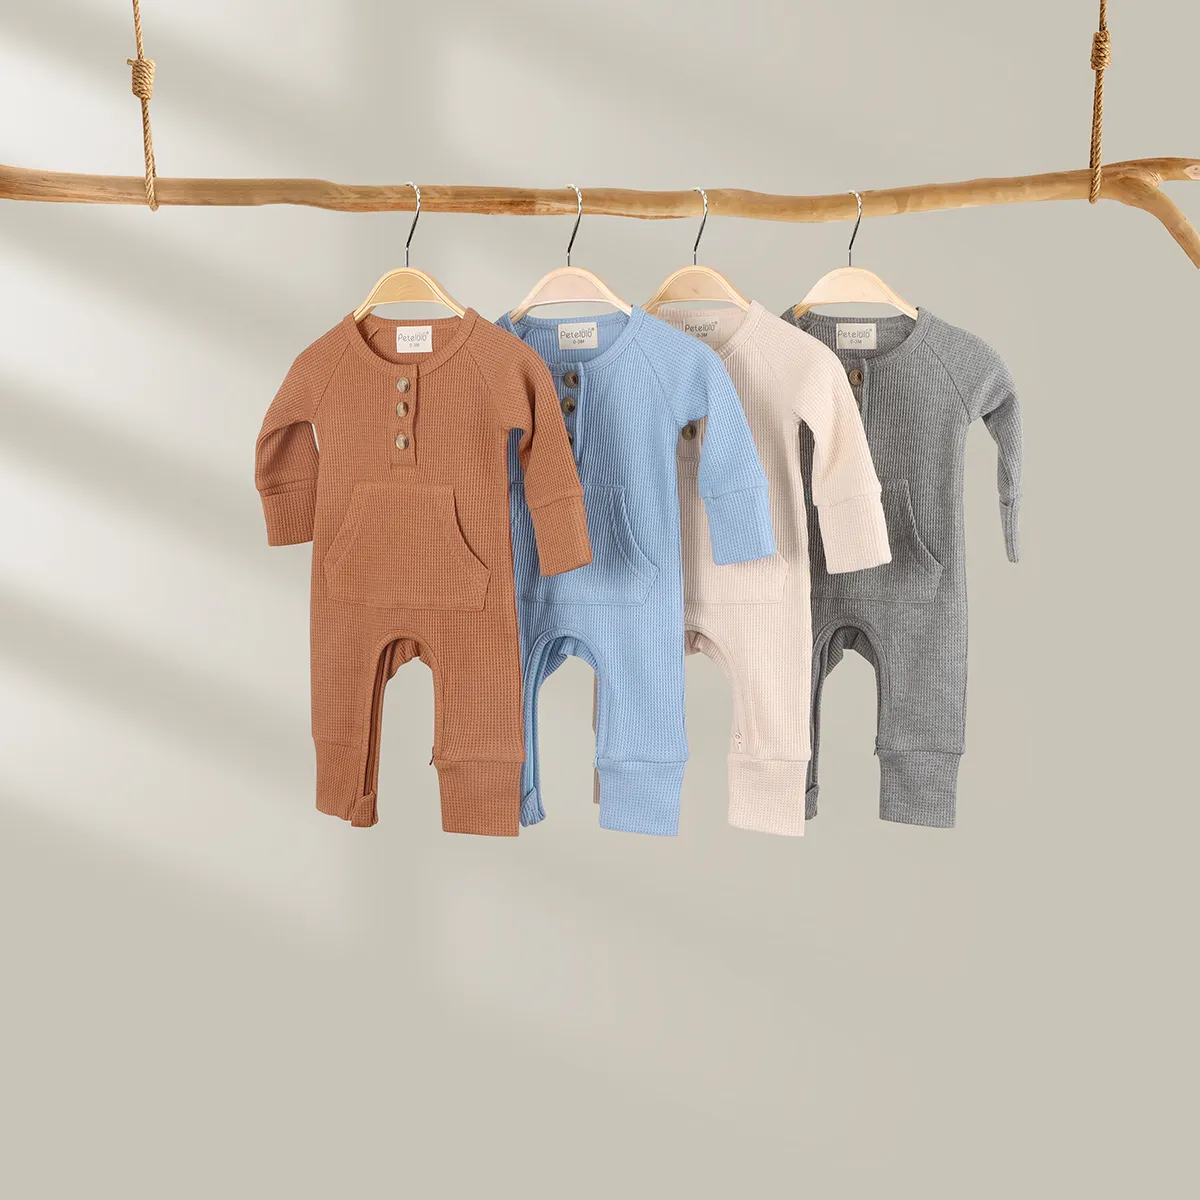 Bequemes Waffel-Babystrampler-Set bunt Schnappverschluss lange Ärmel aus Baumwolle Polyester für Kinder 3-6 Monate Größen